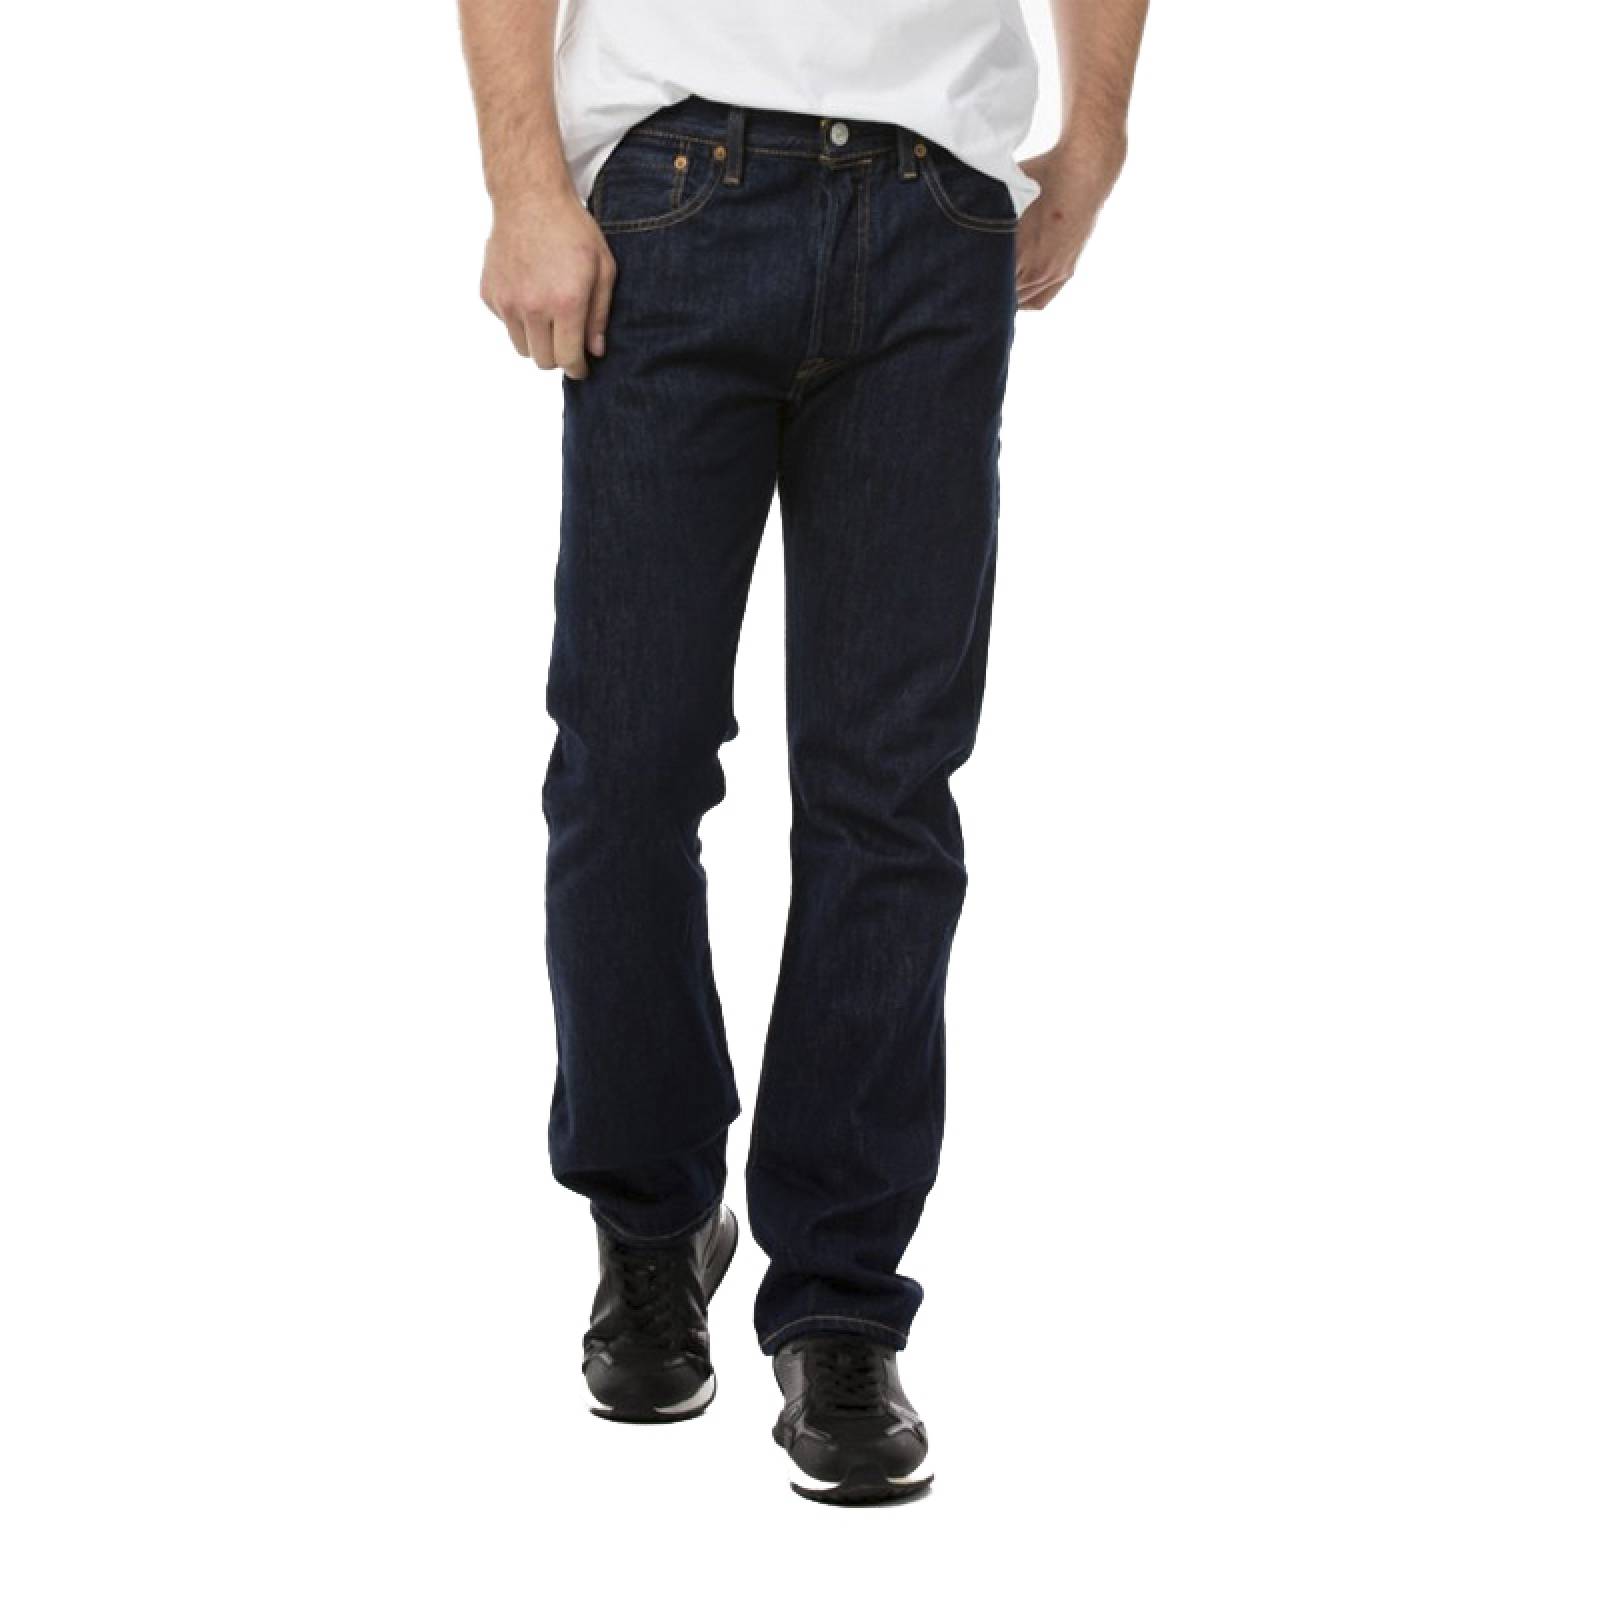 Jeans Levis 501 Original Fit 005010115